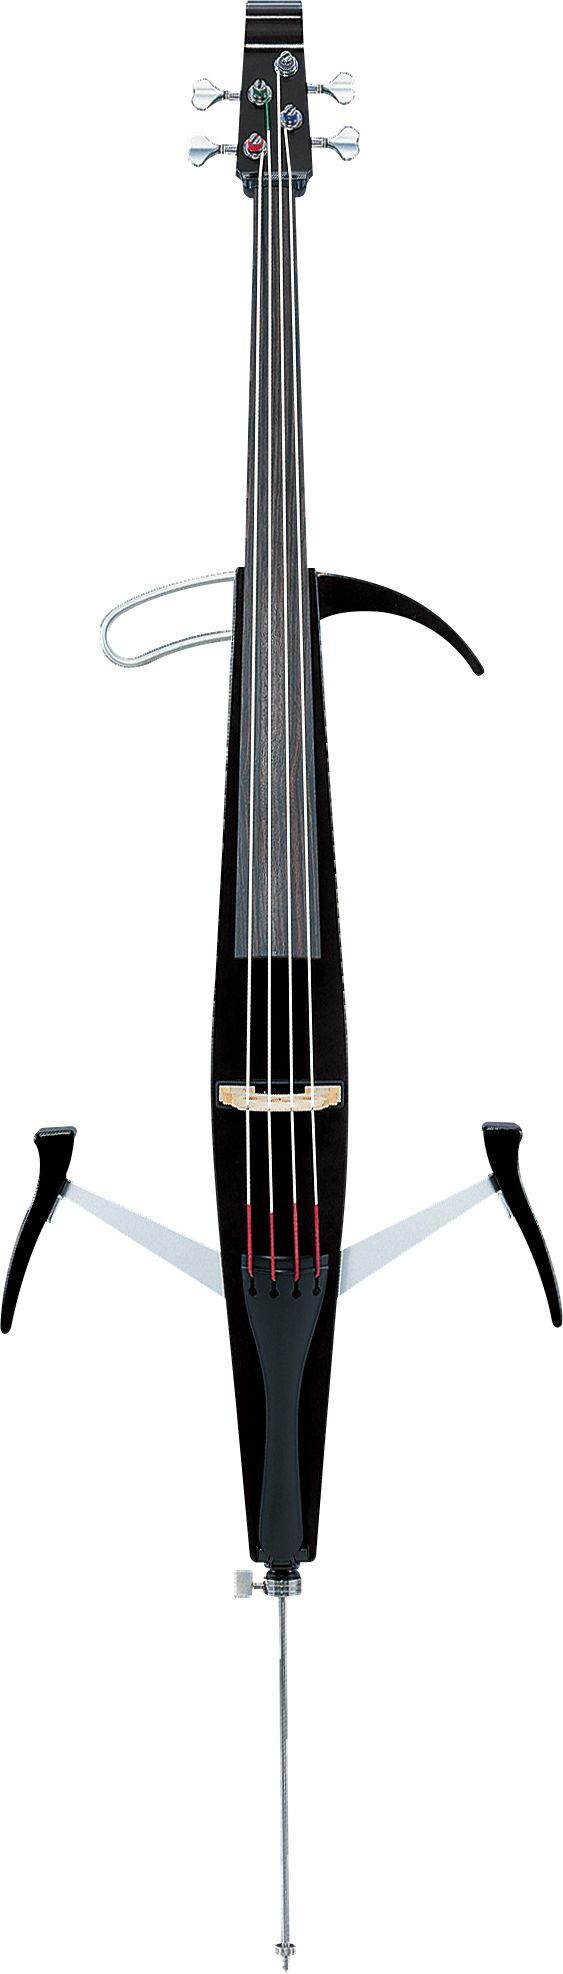 Yamaha Svc-50 Silent Cello - Violoncelle Électrique - Main picture